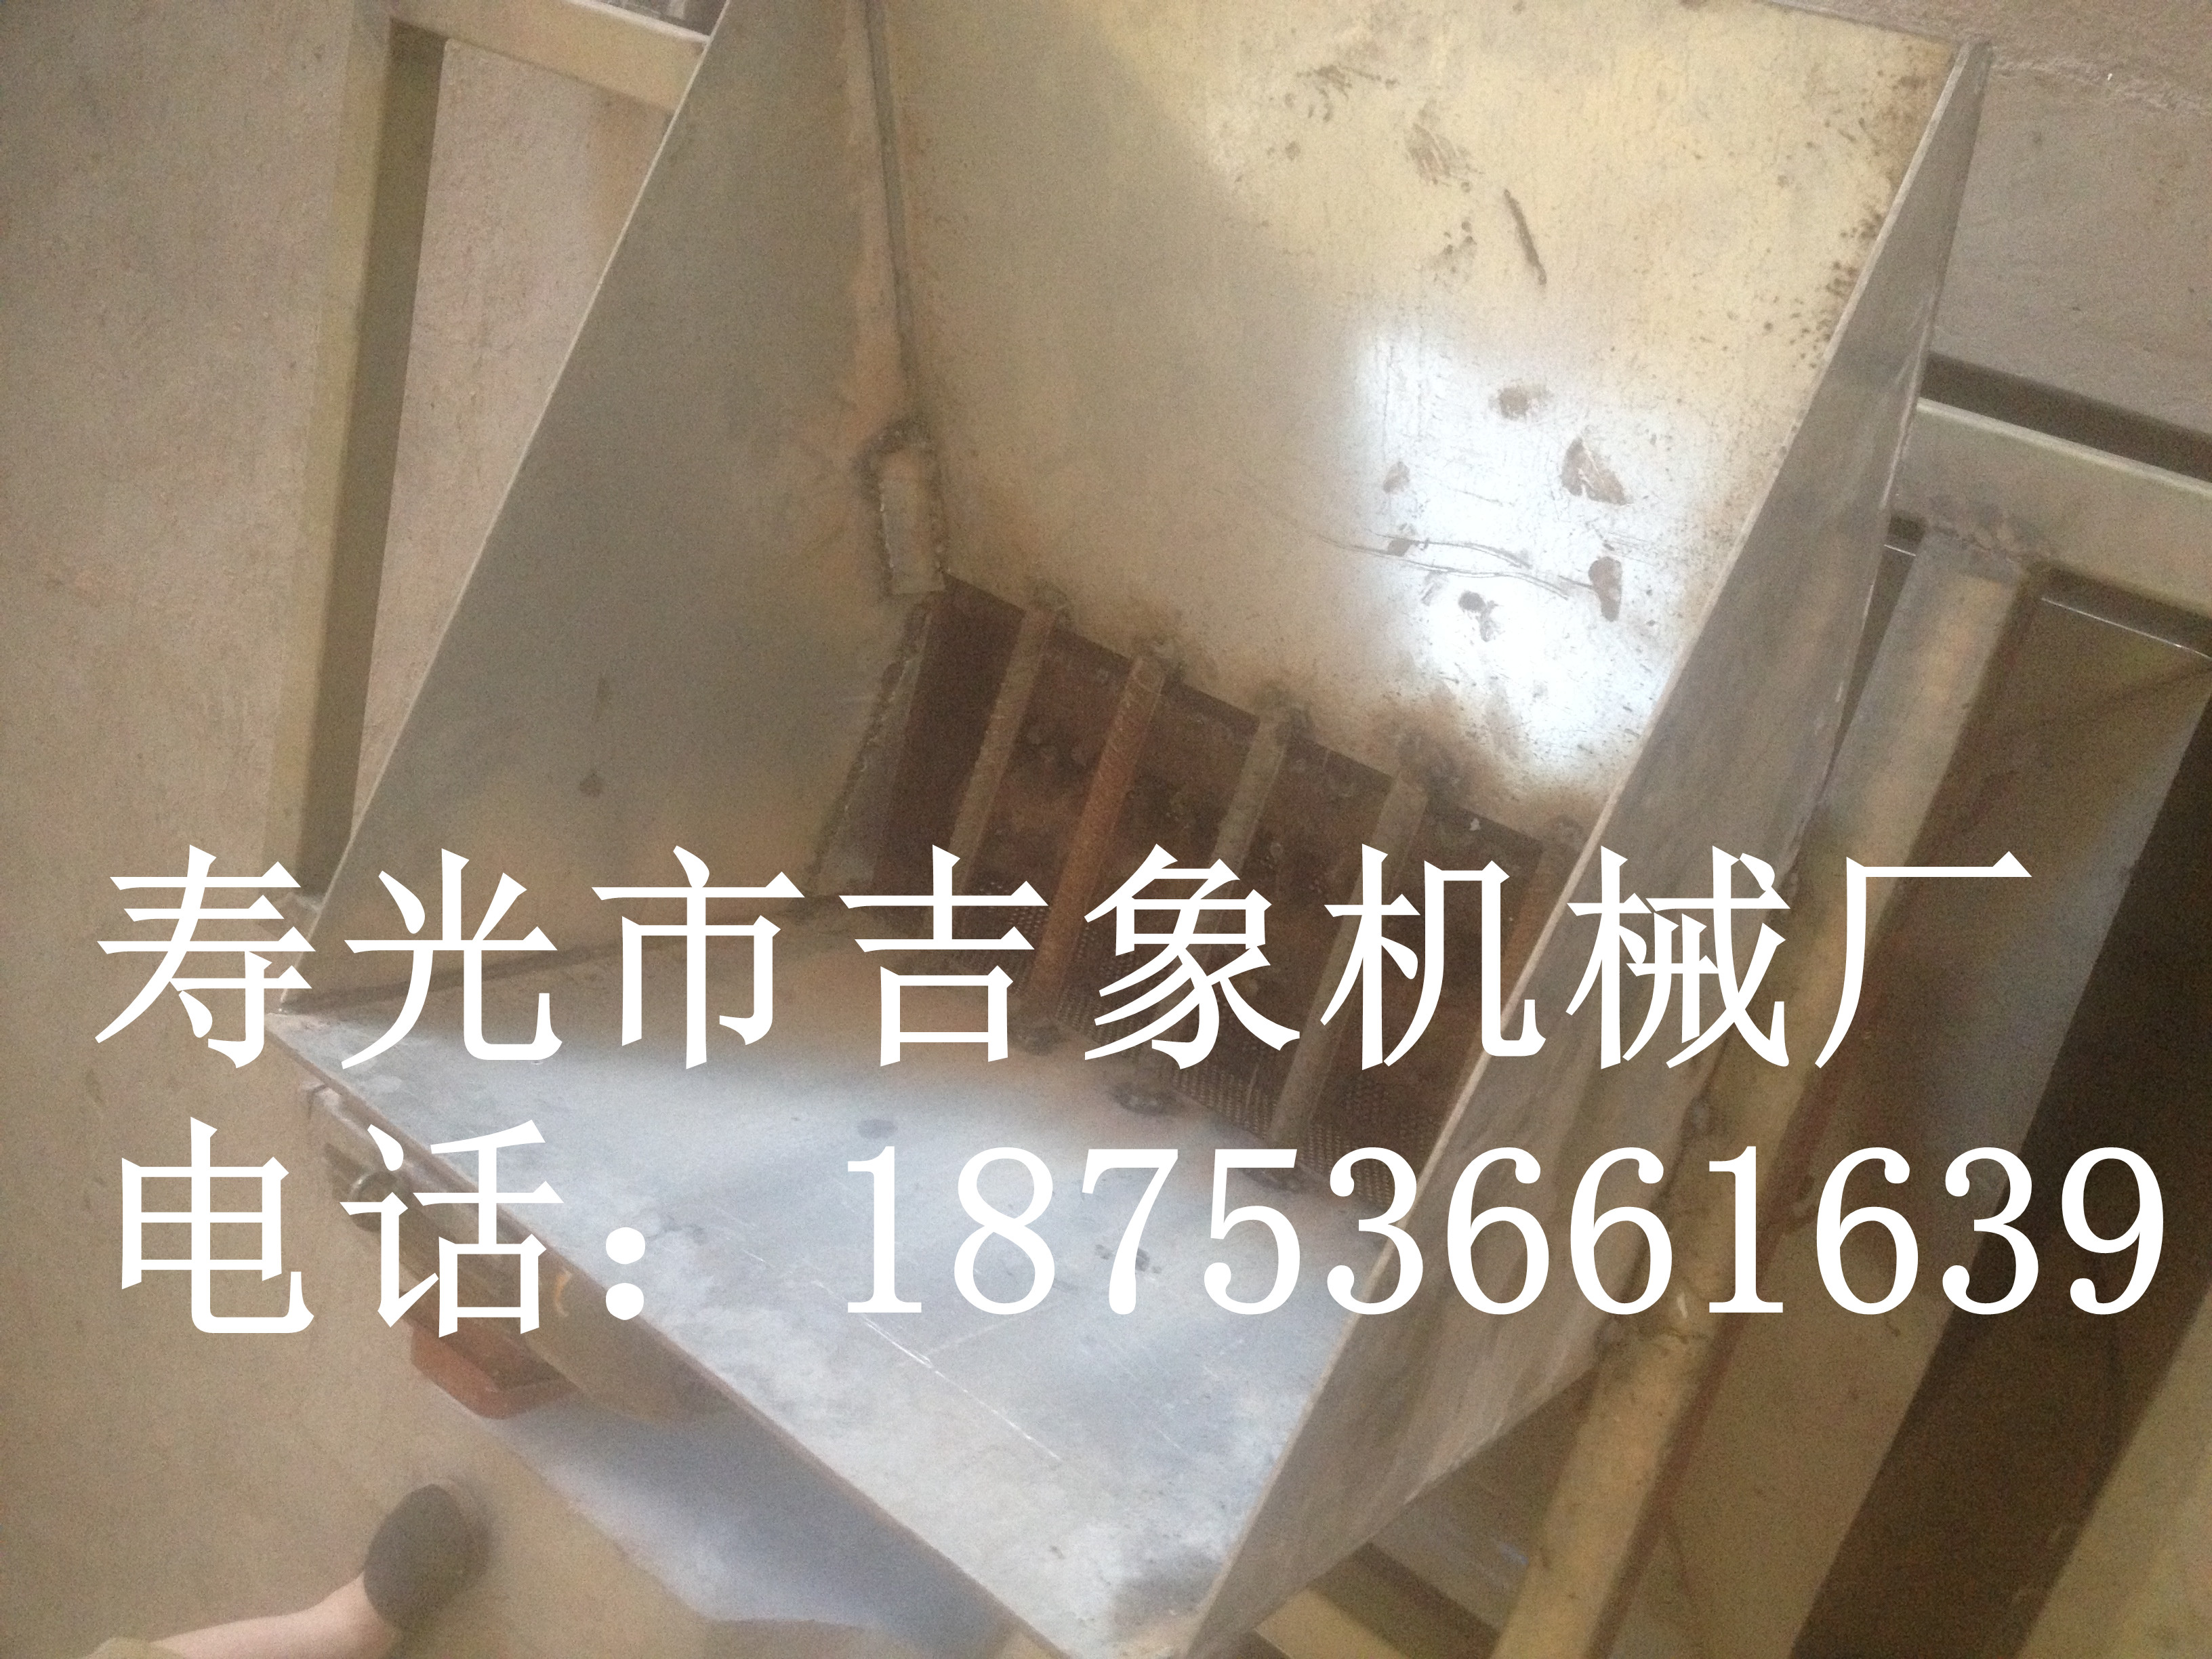 山东寿光厂家专业生产定做各种型号化肥破碎机图片